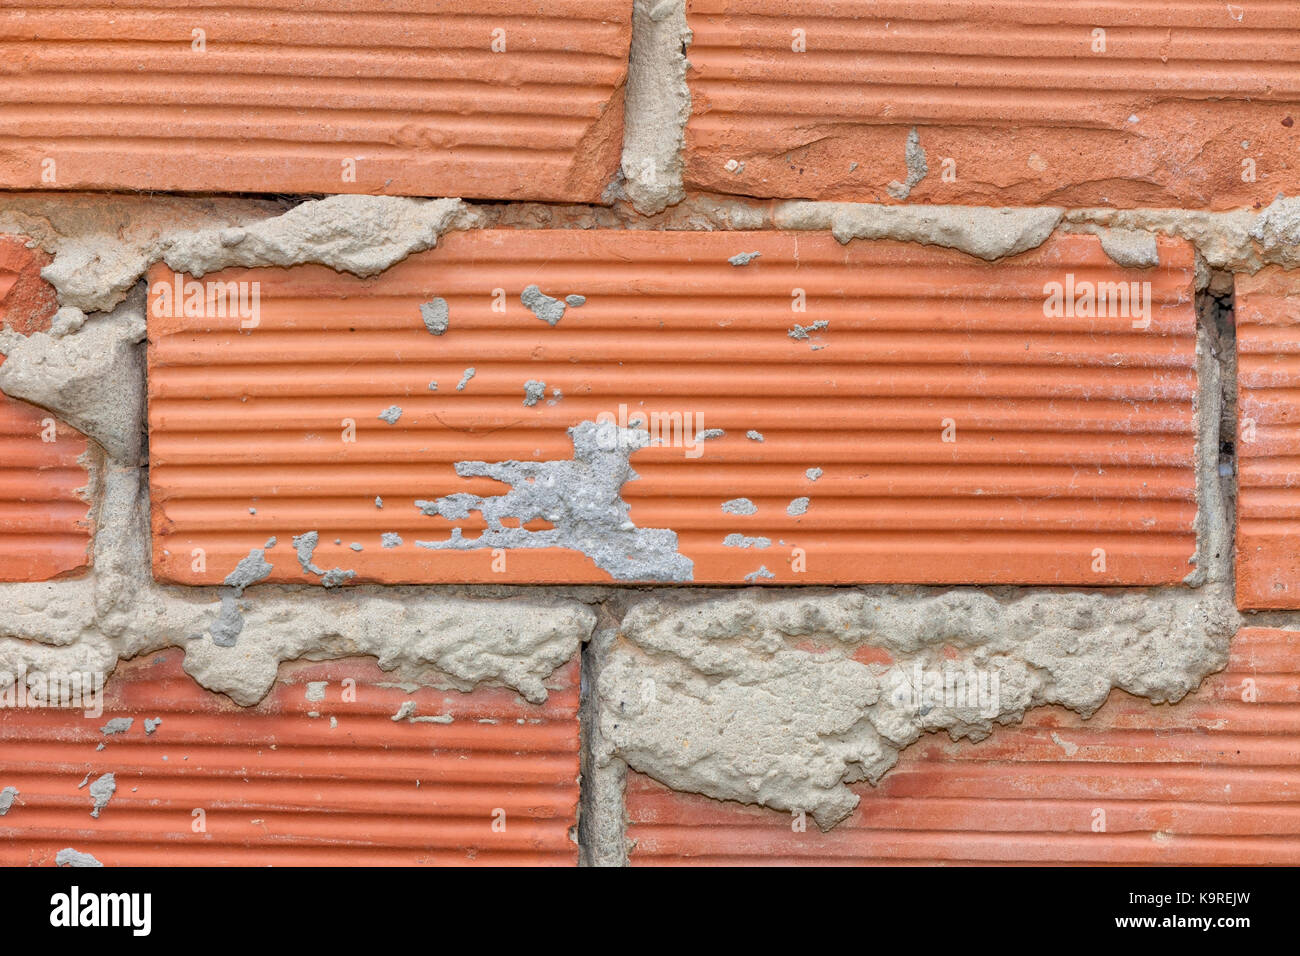 Wall texture of baked clay bricks. Stock Photo